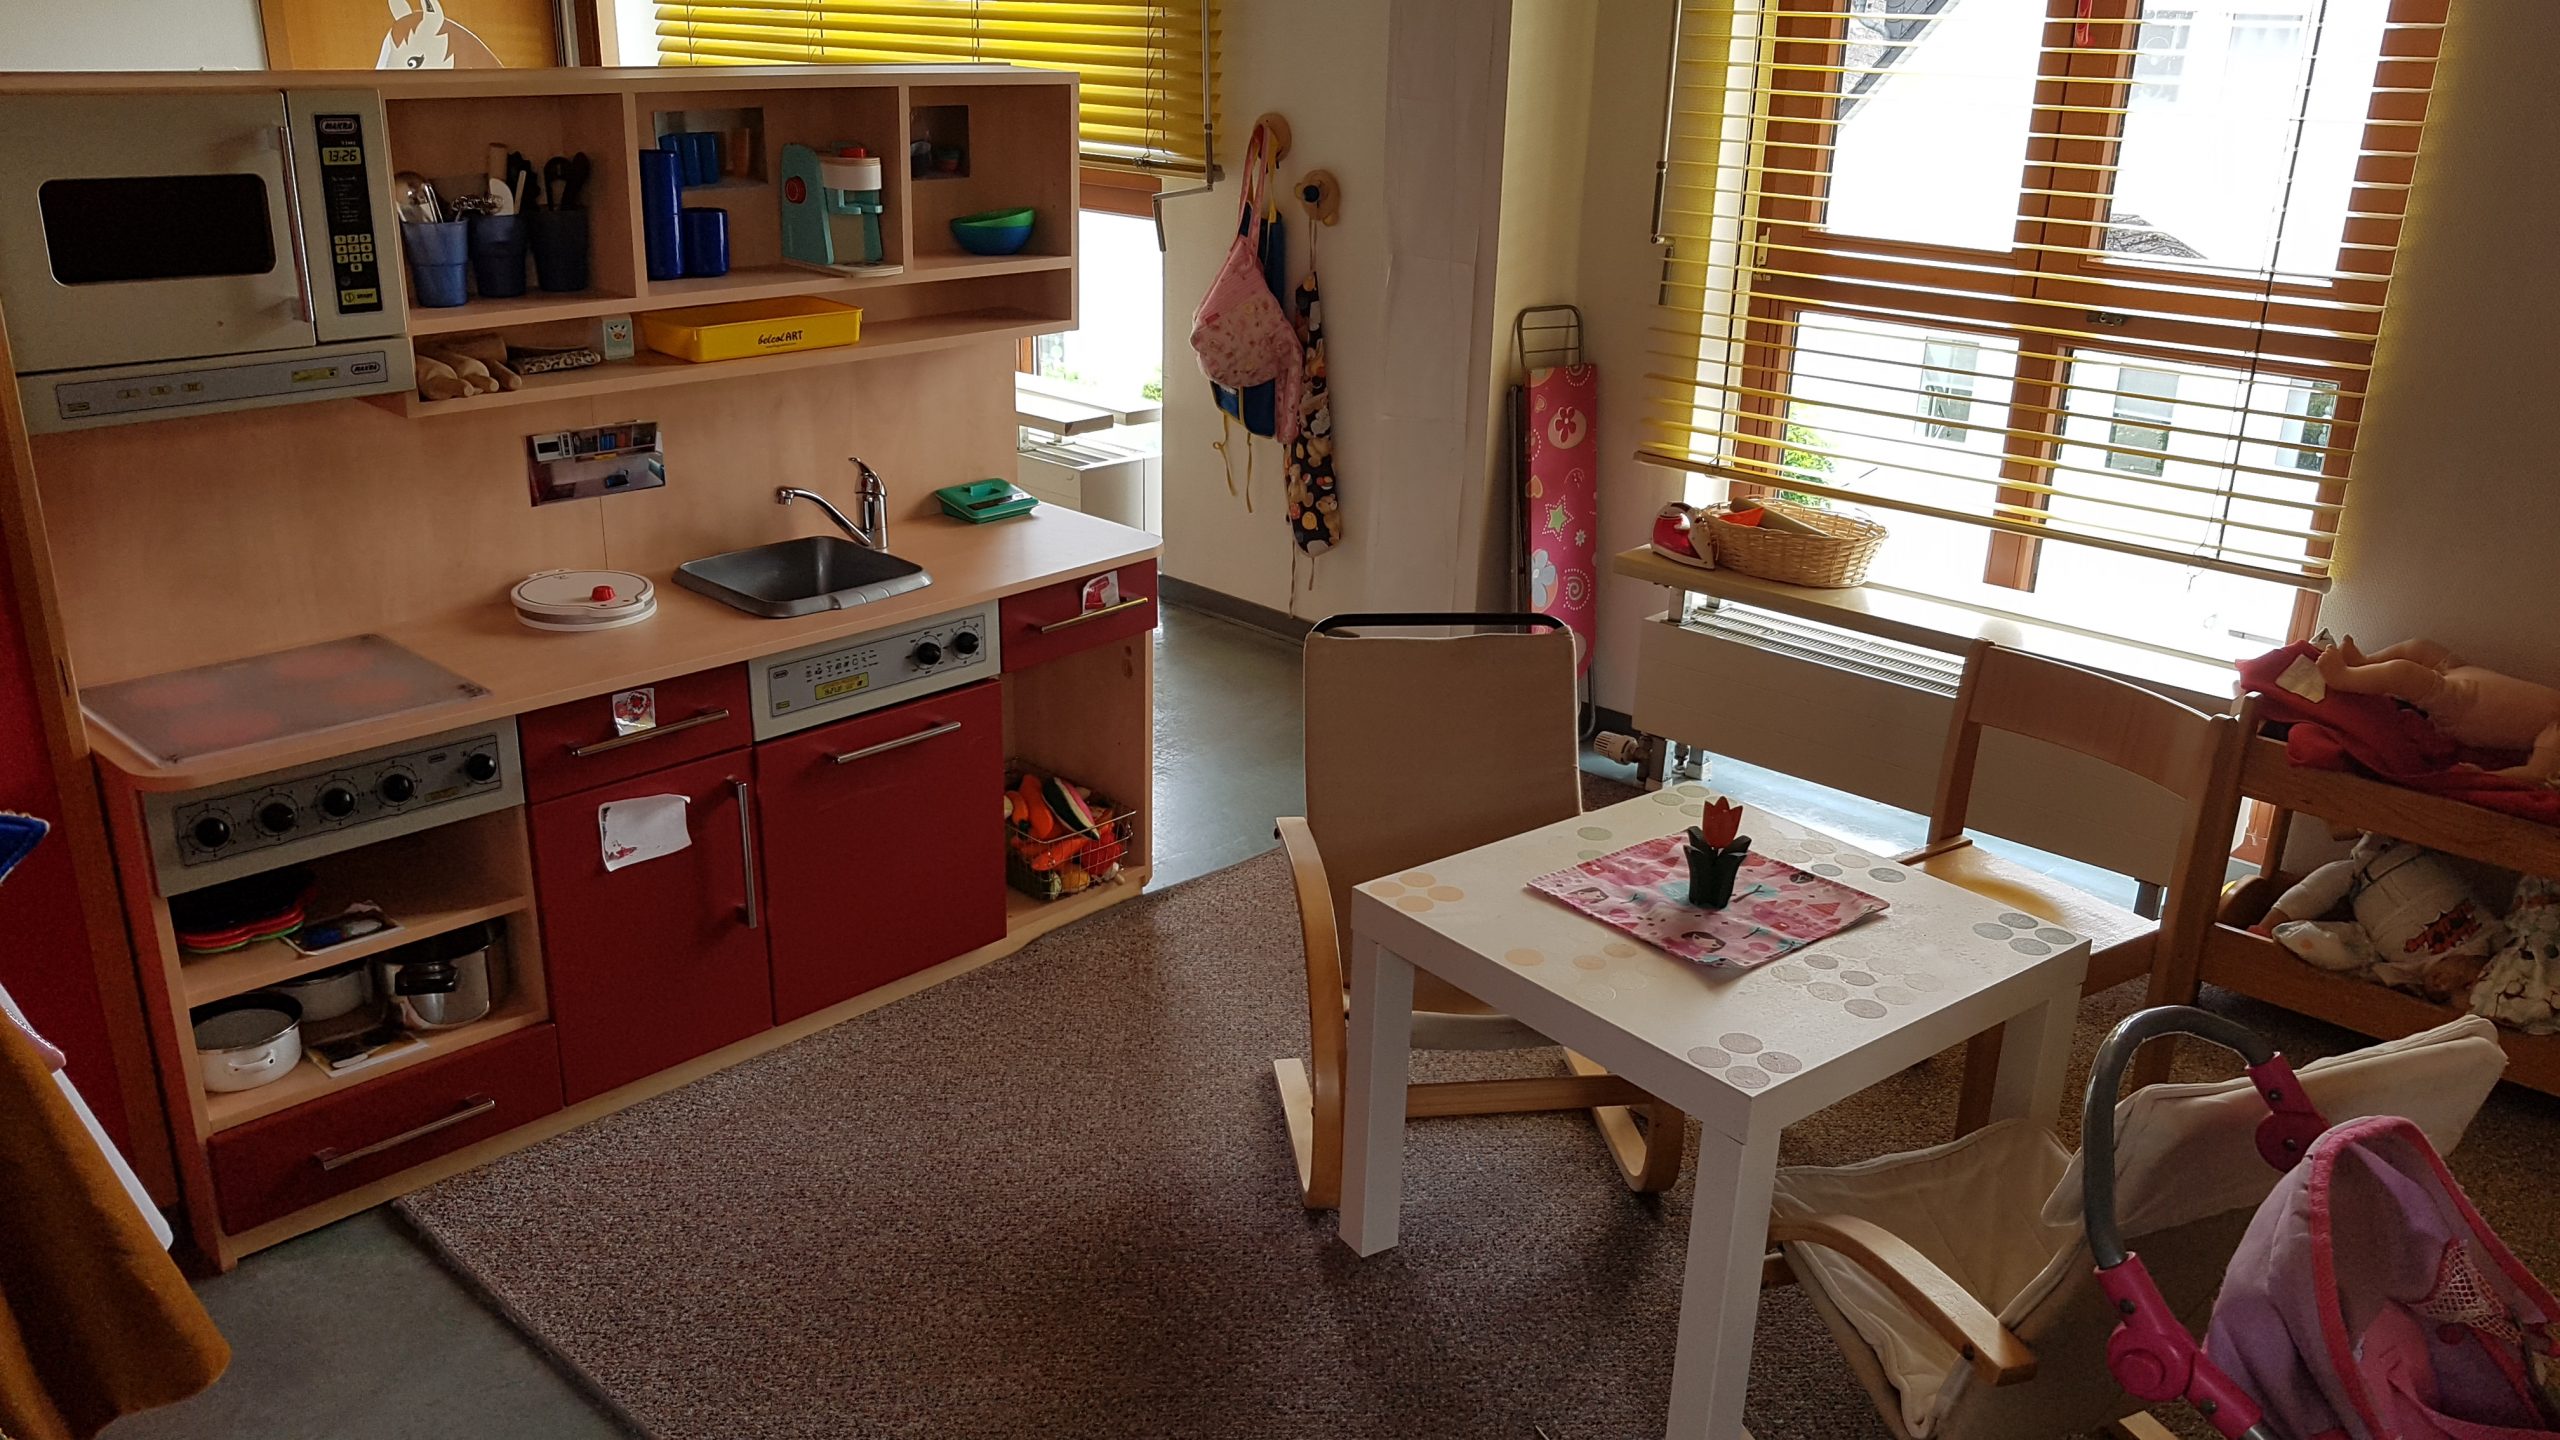 Eine Kinderküche mit Sitzbereich laden zum Freispiel ein. Die Schränke der Küche sind rot und es gibt eine Mikrowelle, einen Herd, eine Spüle und eine Spülmaschine, ganz wie in einer richtigen Küche. In der rechten Ecke daneben steht ein Kinderbügelbrett.